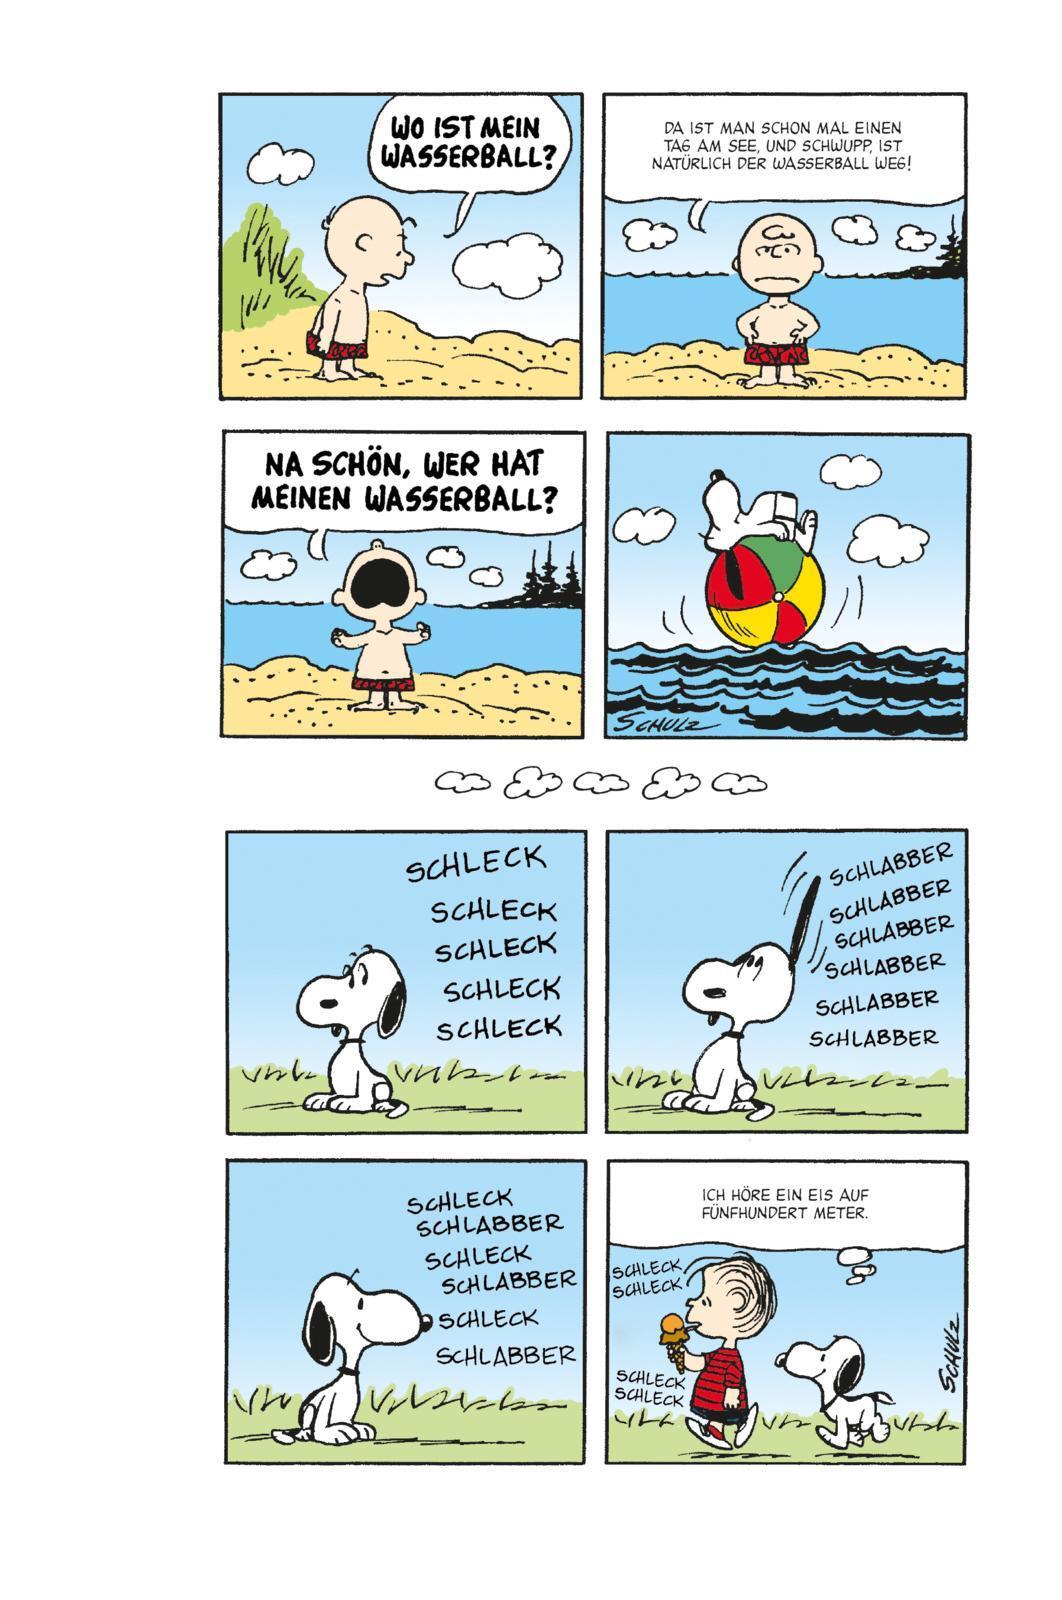 Das Snoopy-Super-Sommer-Ferienbuch' von 'Charles M. Schulz' - Buch -  '978-3-551-76589-5